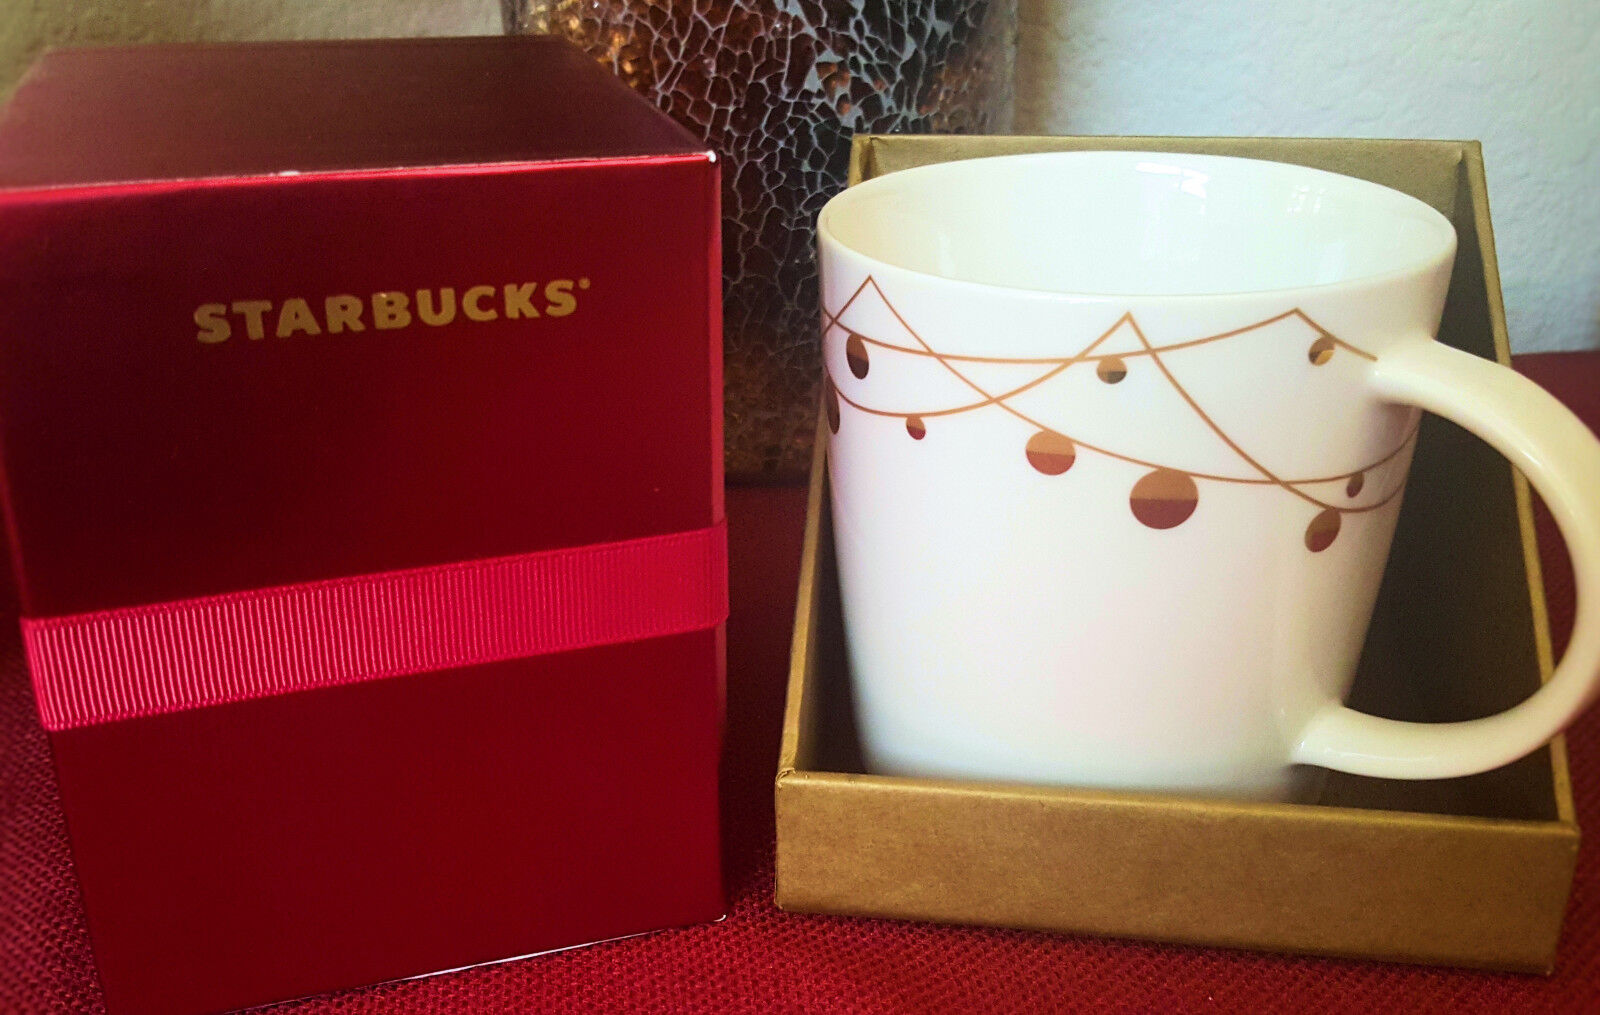 New 2012 Starbucks Holiday Coffee Mug Gold Christmas Ornaments Collectible 14 oz